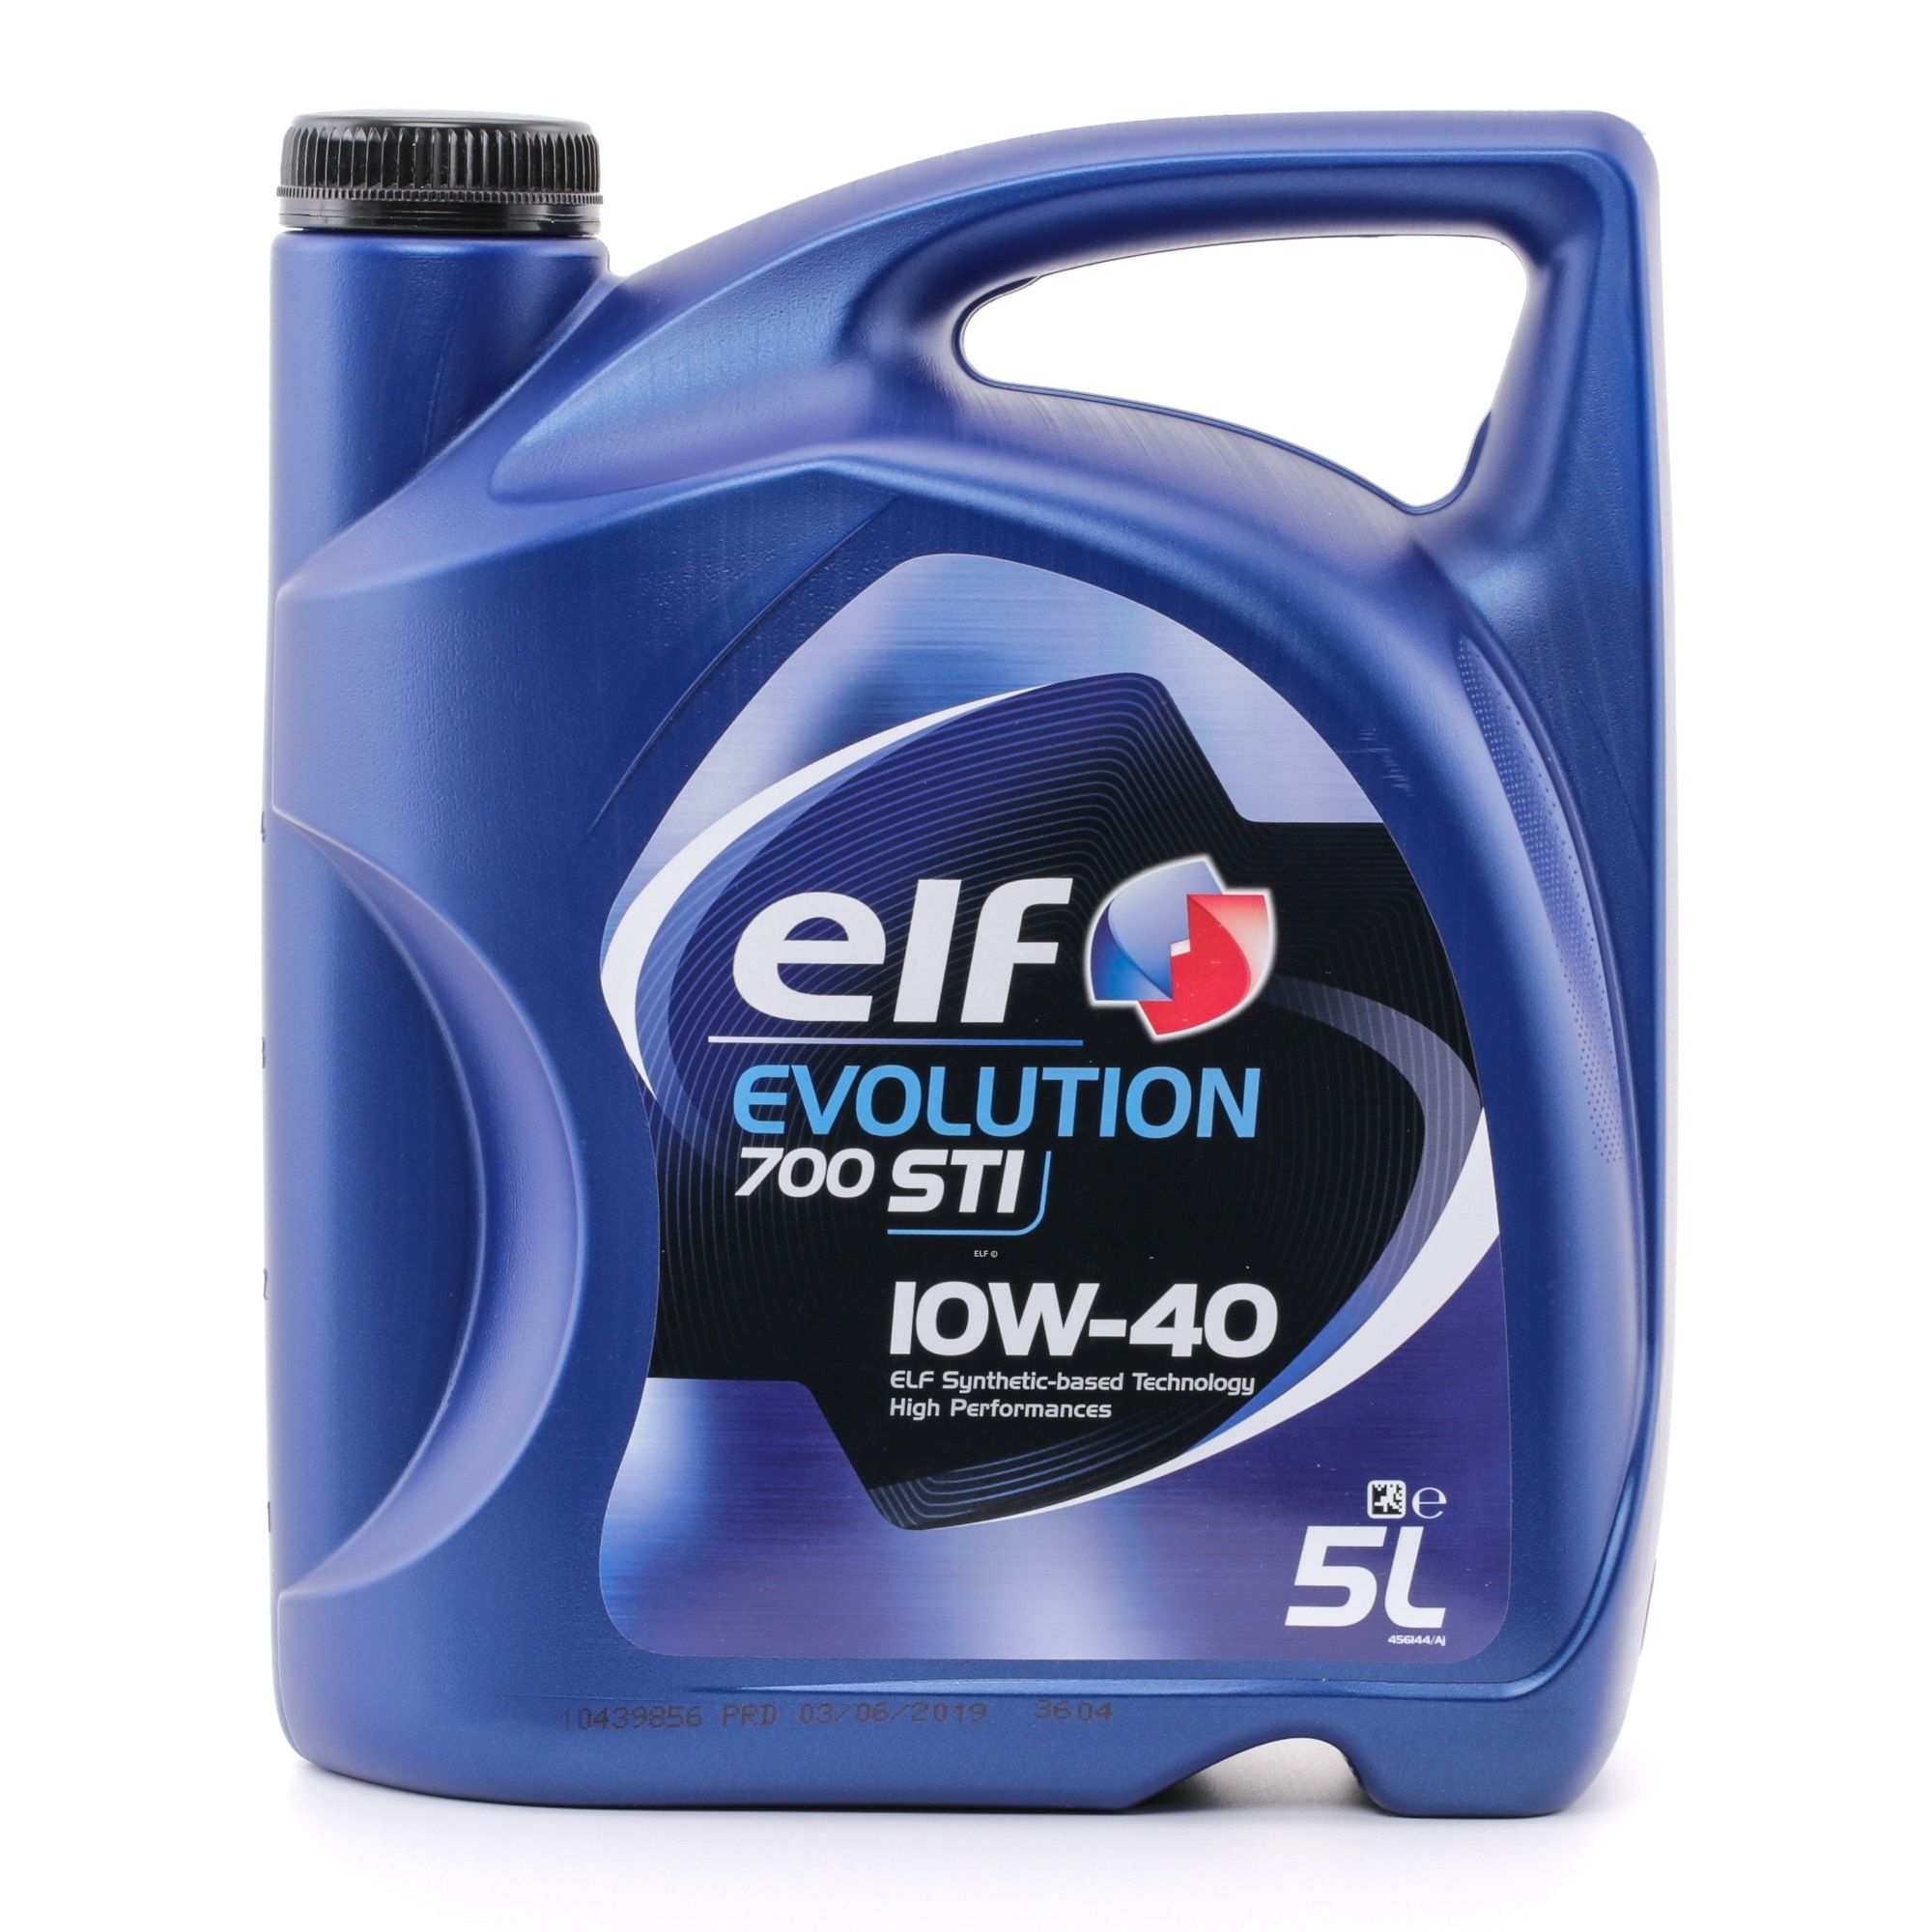 ELF Evolution, 700 STI 2202840 Motoröl 10W-40, Inhalt: 5l, Teilsynthetiköl